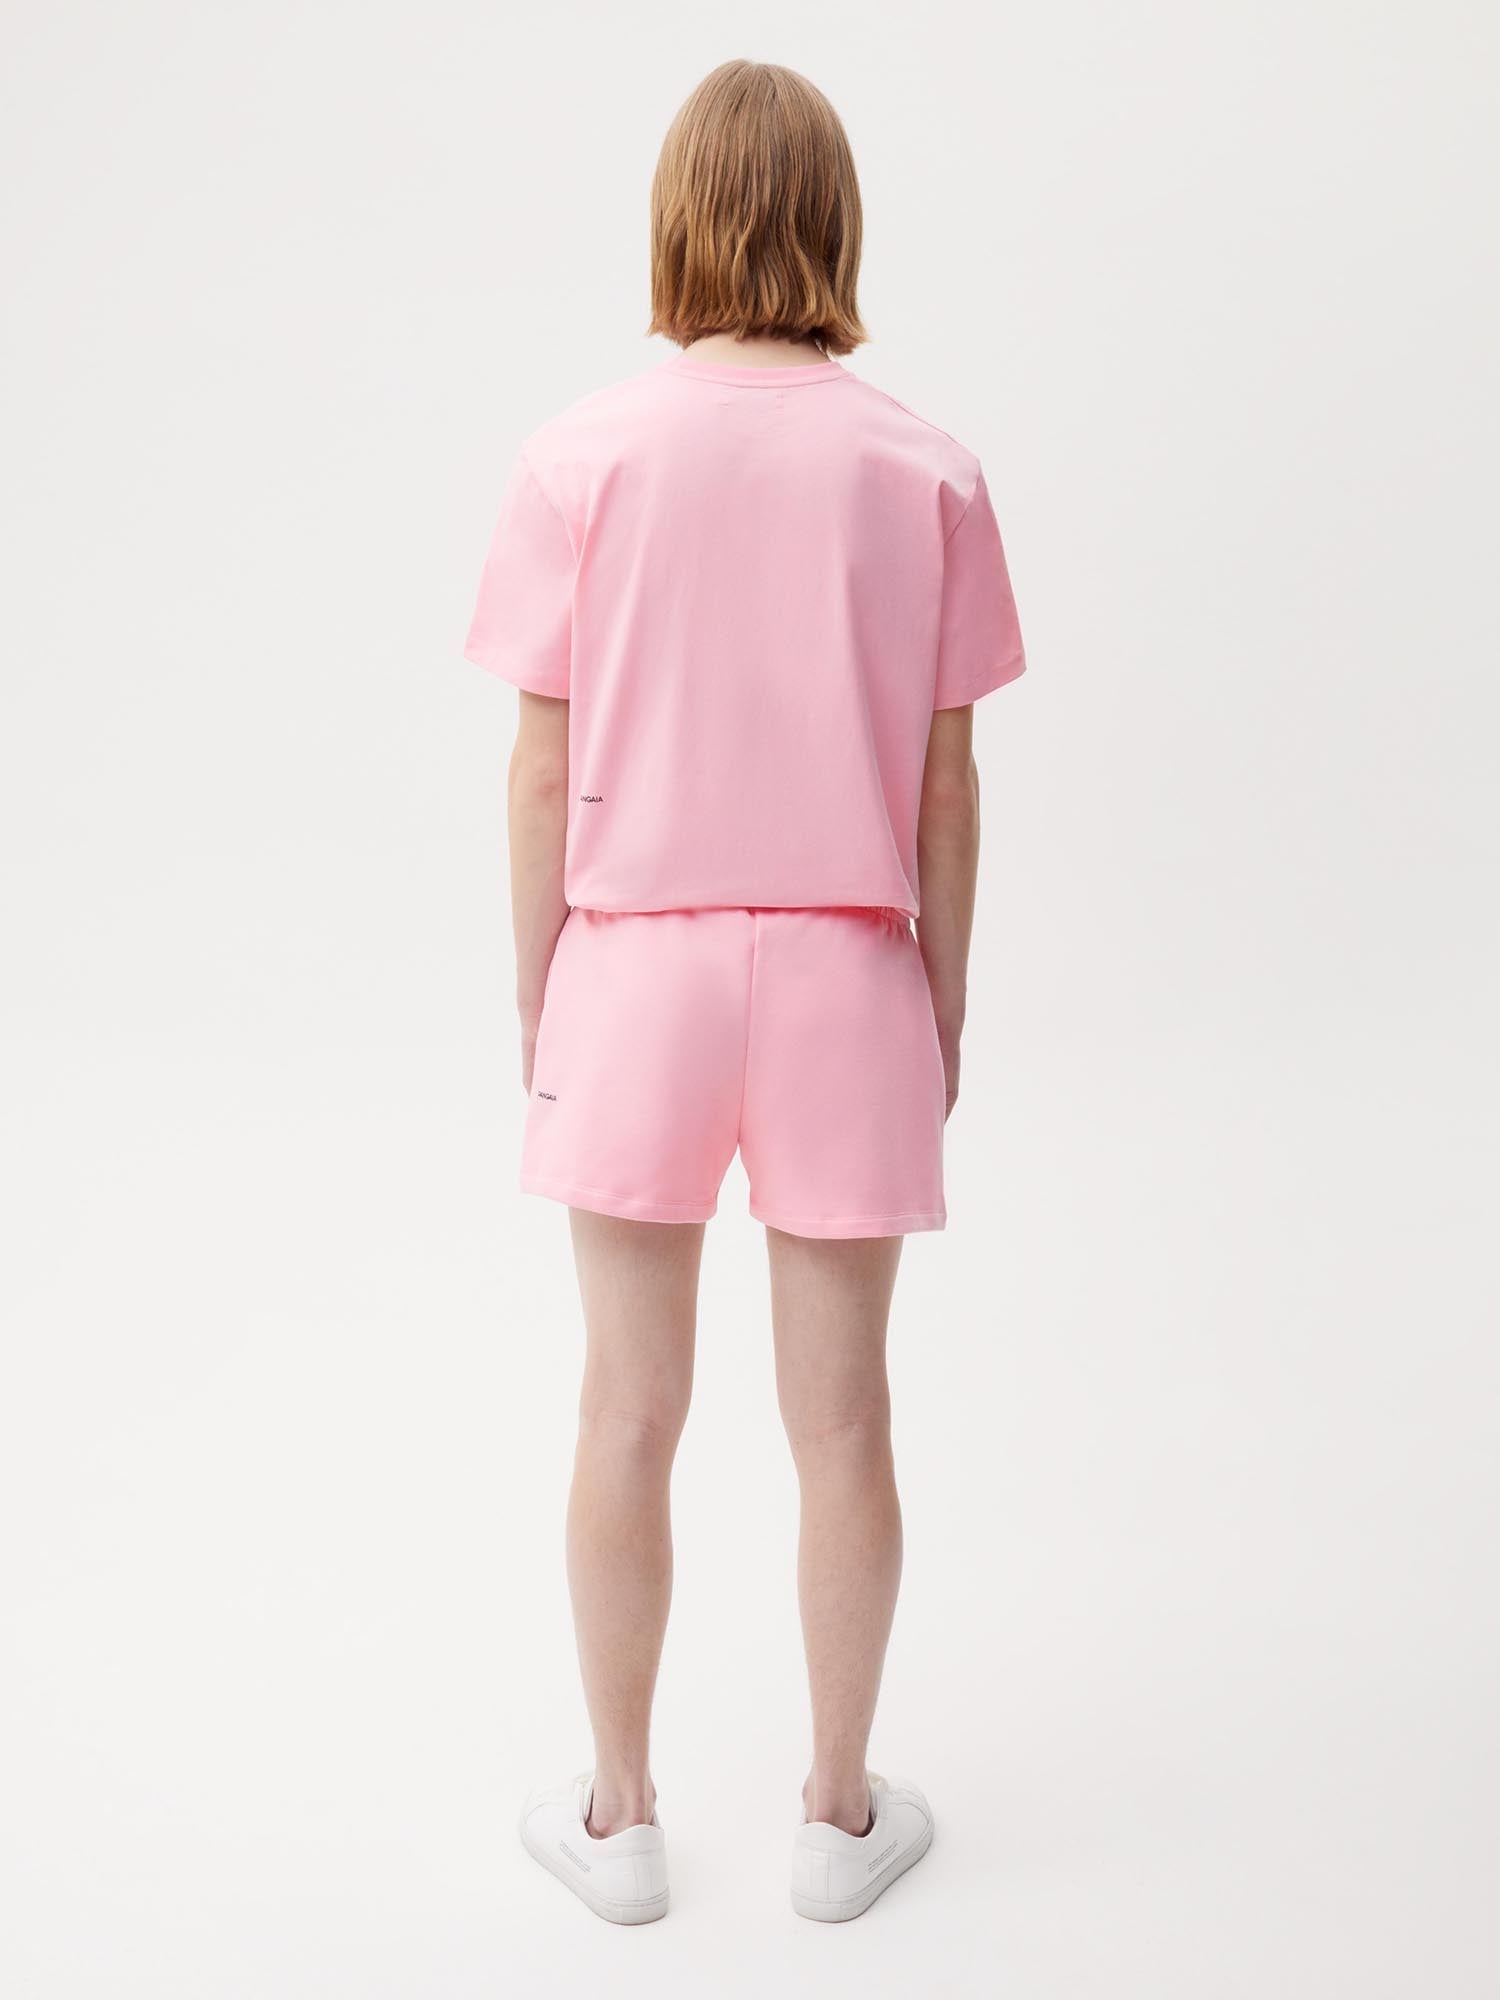 Sakura Organic Cotton Shorts Pink Male